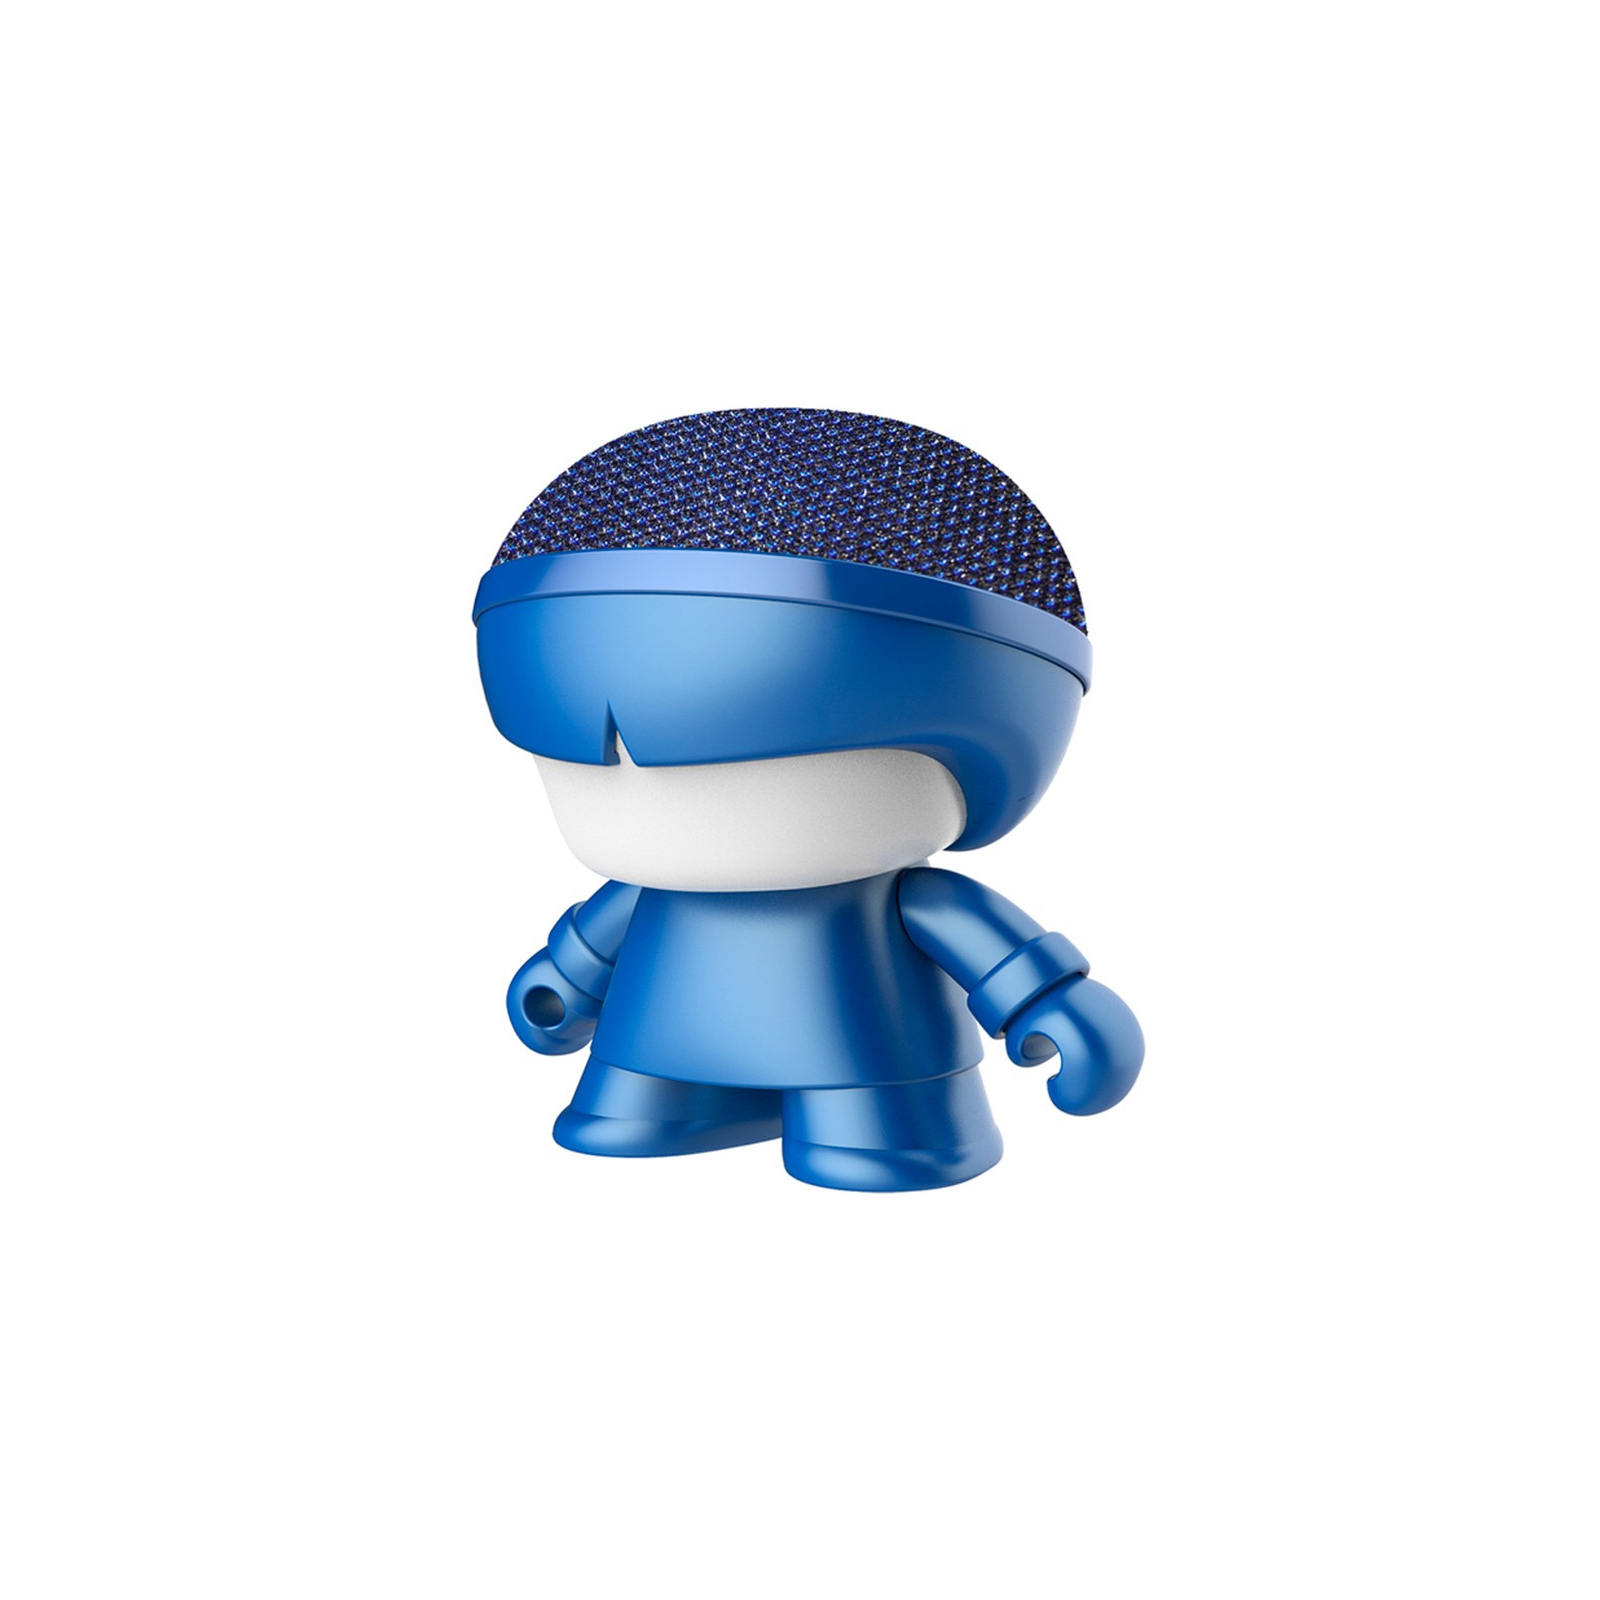 Интерактивная игрушка Xoopar Акустическая система Mini Xboy Металлик Blue (XBOY81001.16М)